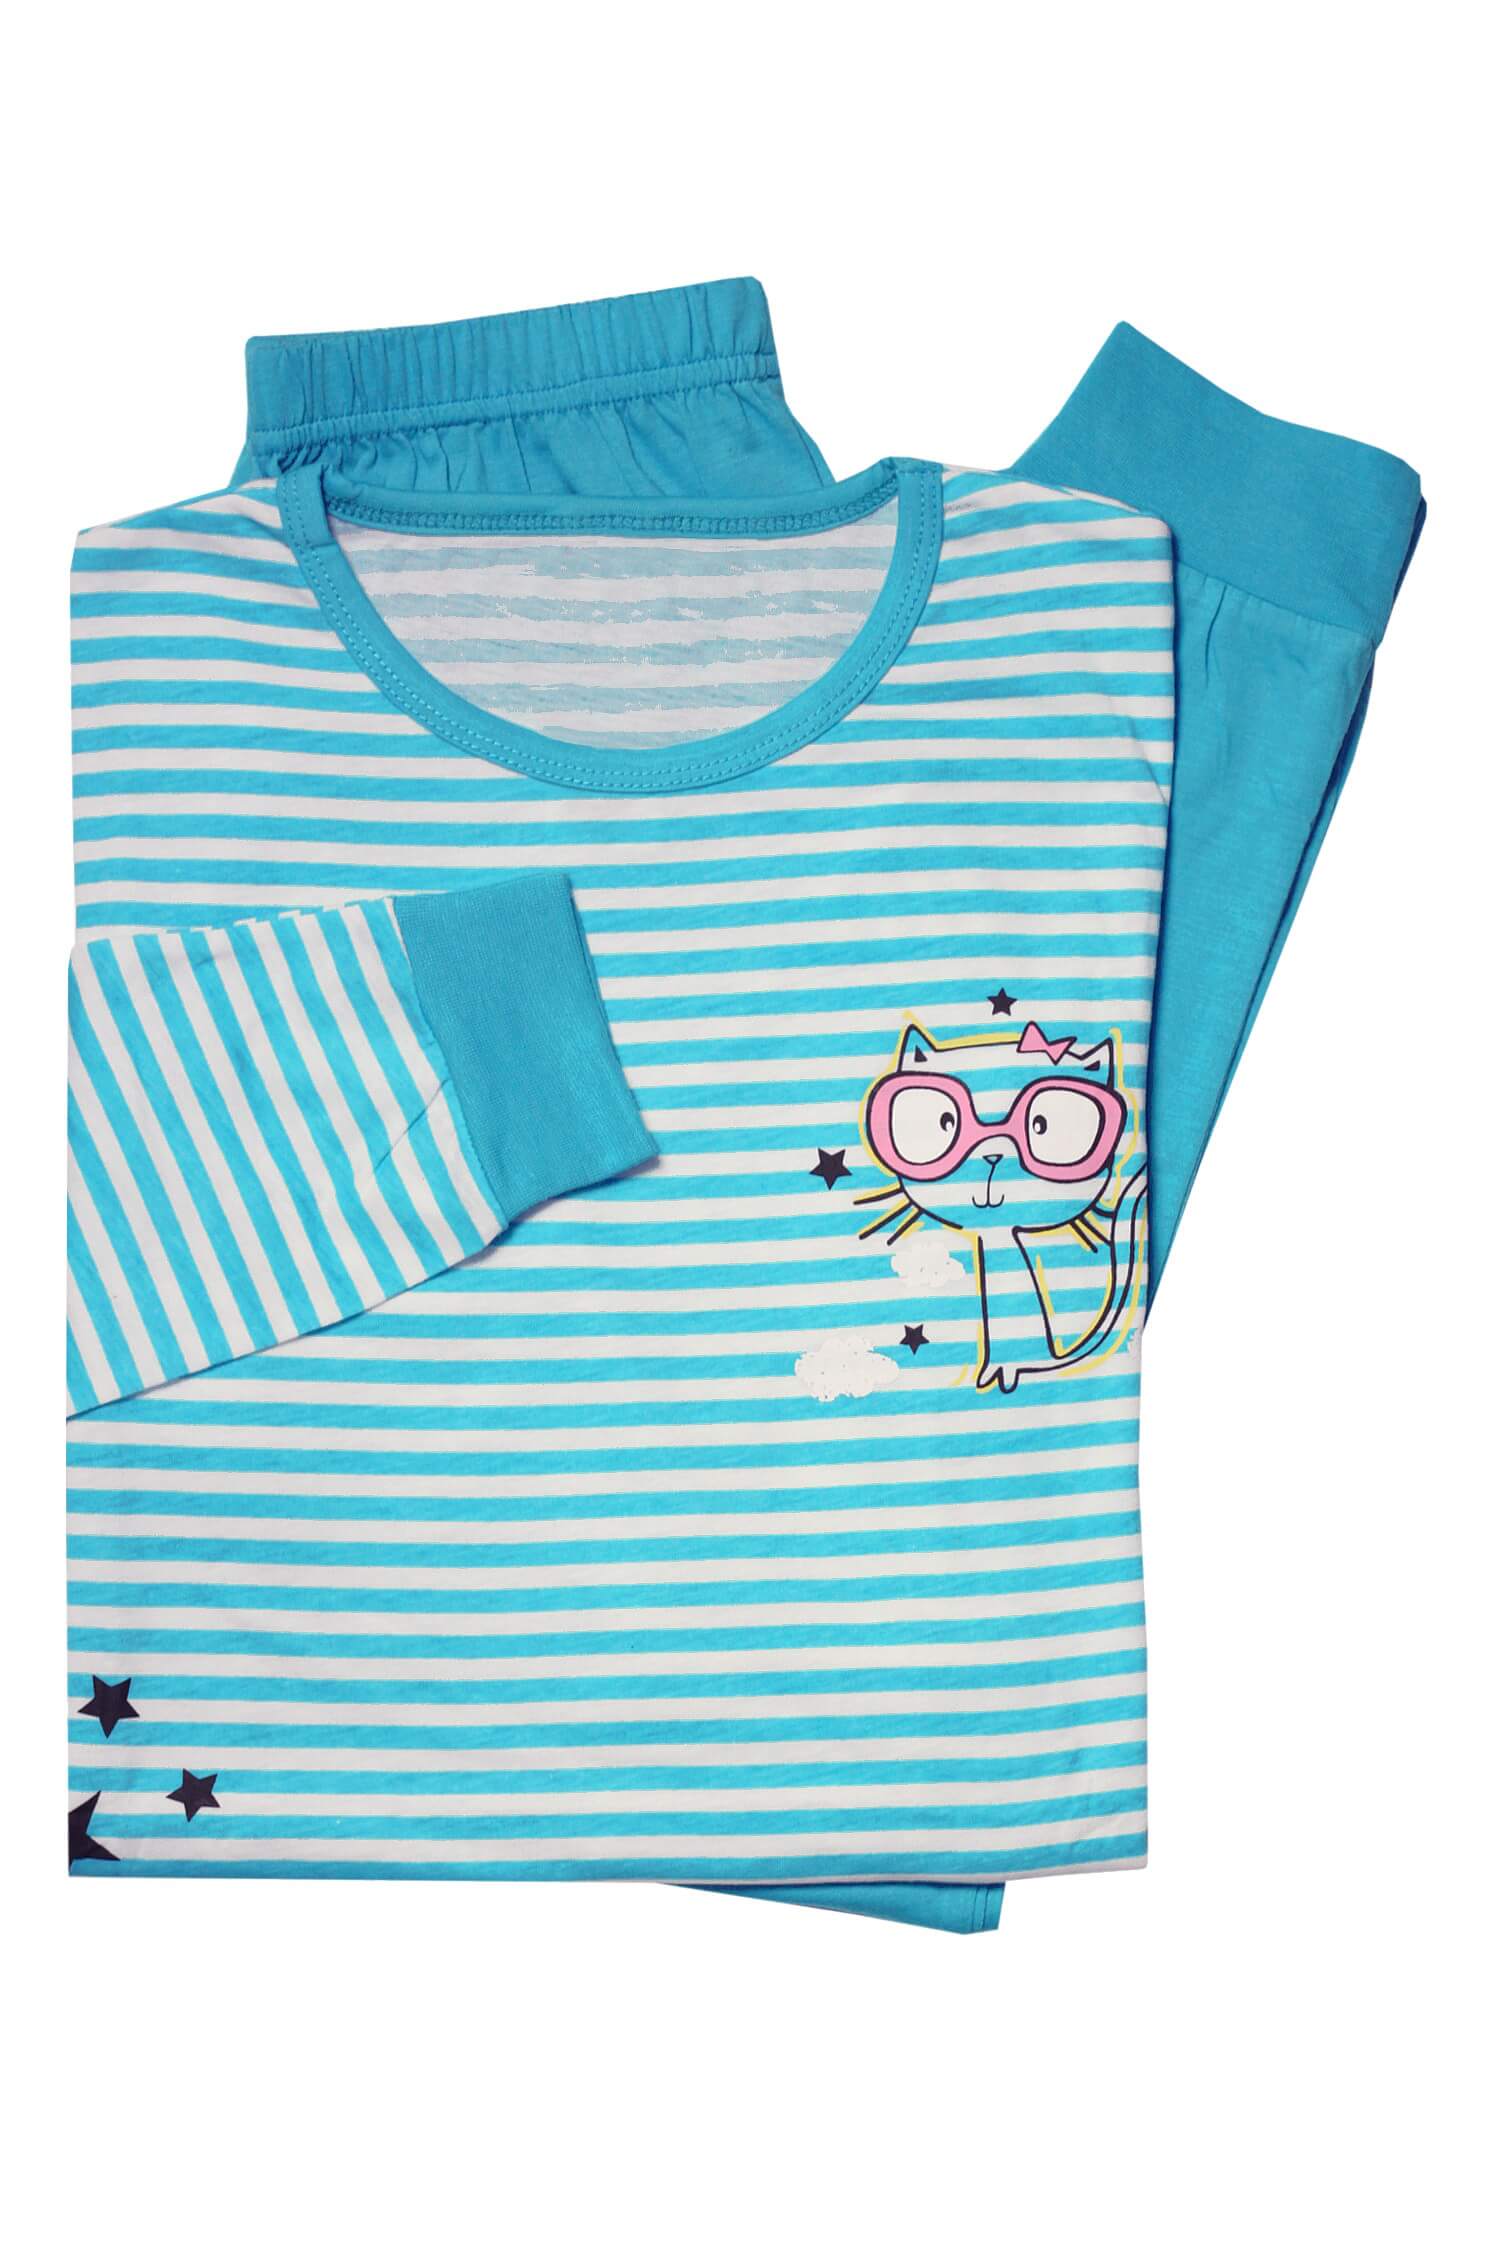 Dívčí bavlněné pyžamo 5-6 let světle modrá